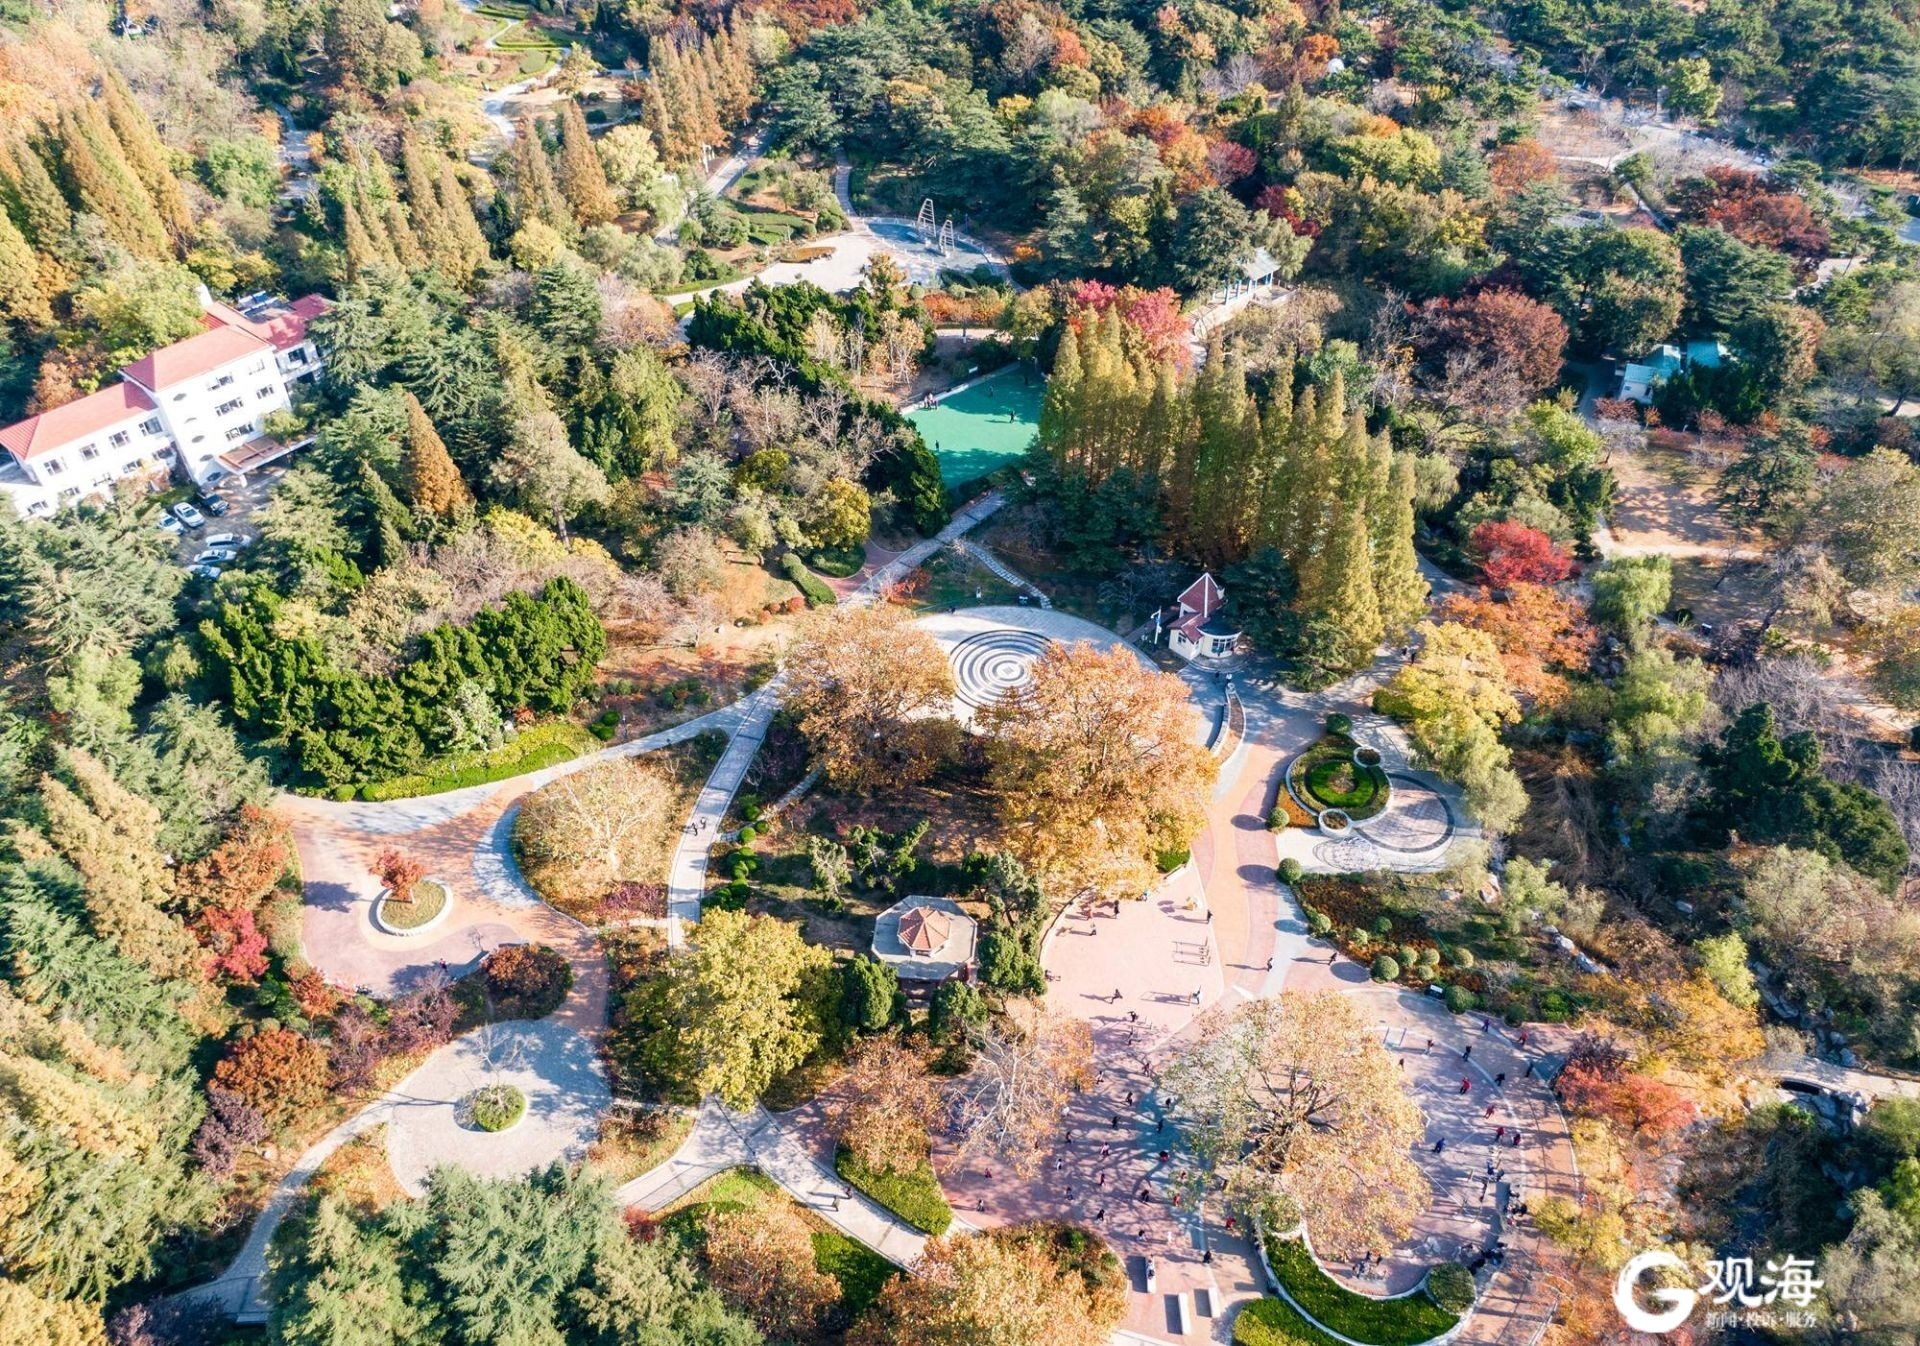 太平山中央公园浮山森林公园4月27日正式开放